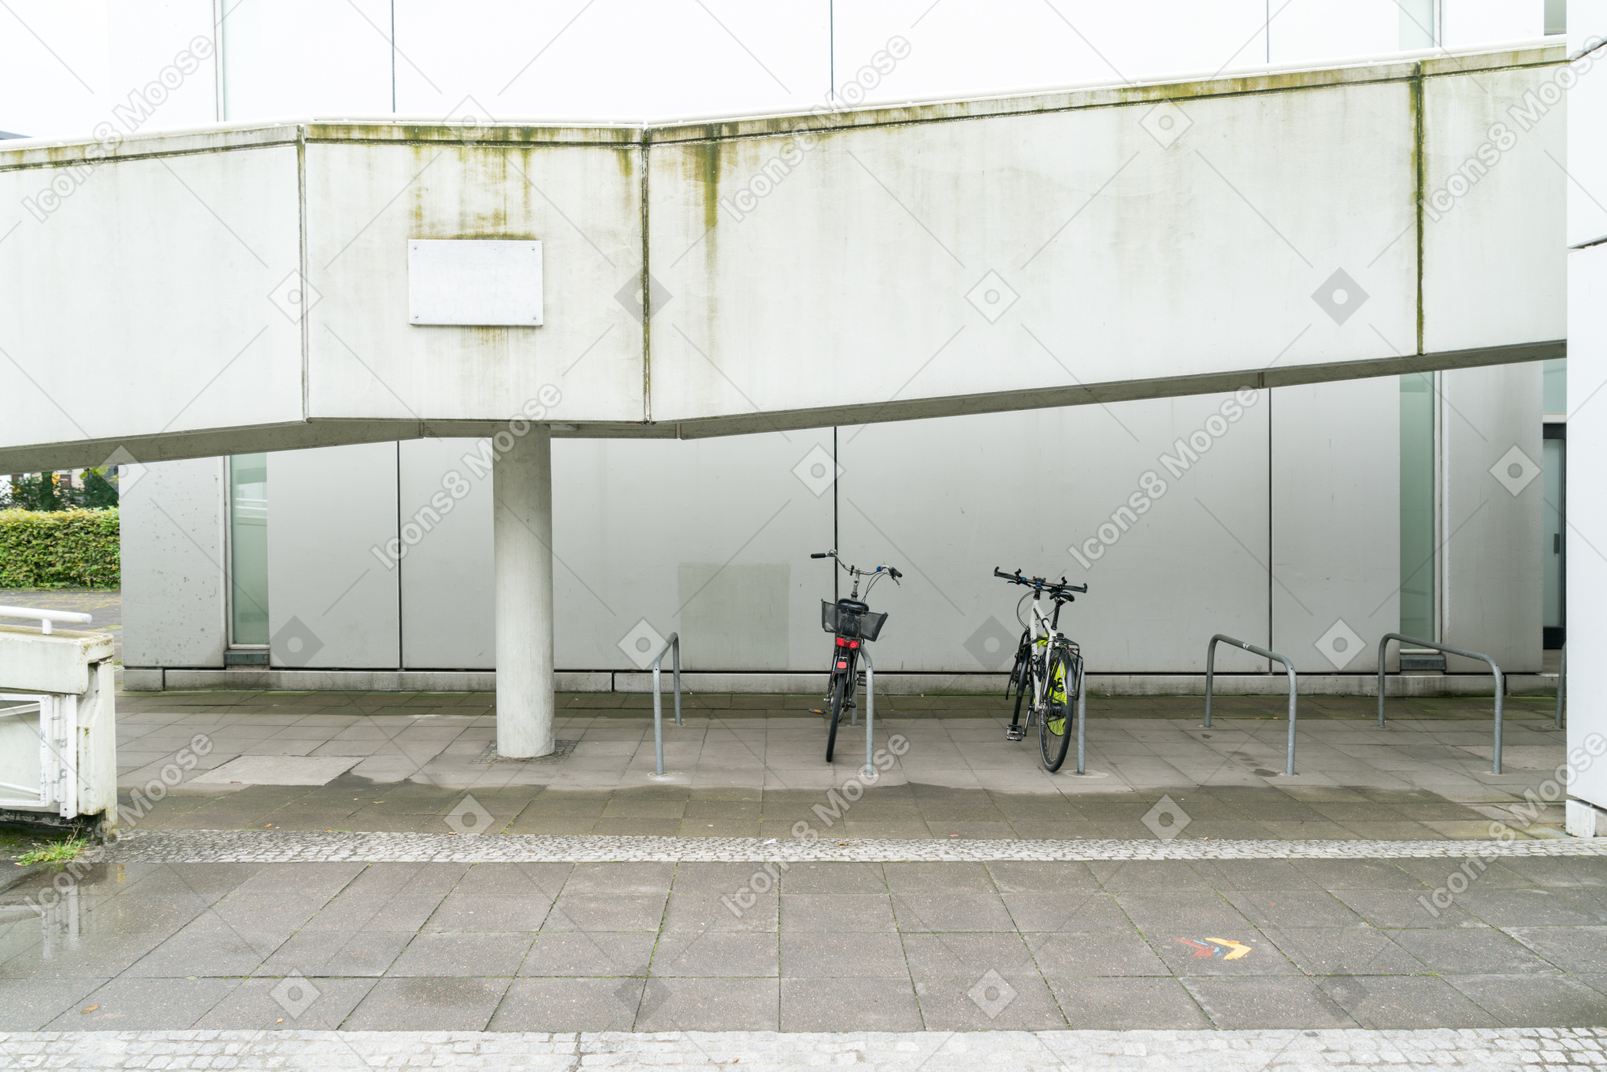 Zwei fahrräder auf dem parkplatz vor dem weißen gebäude